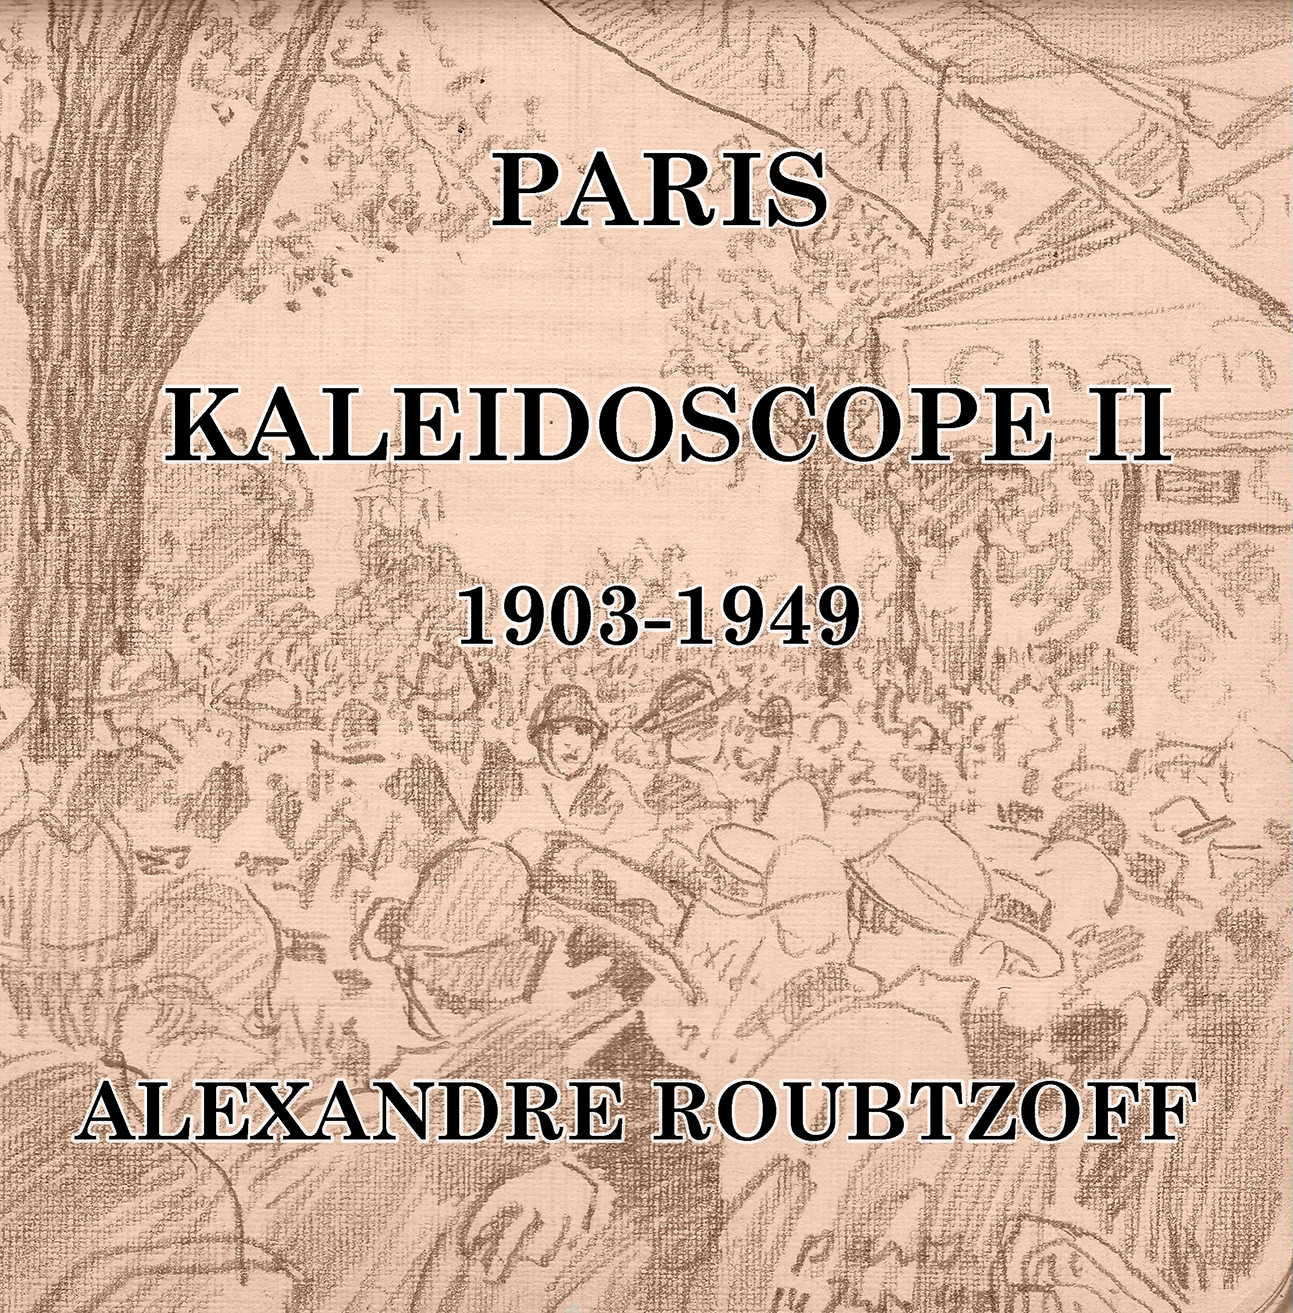 Paris - Kalidoscope II